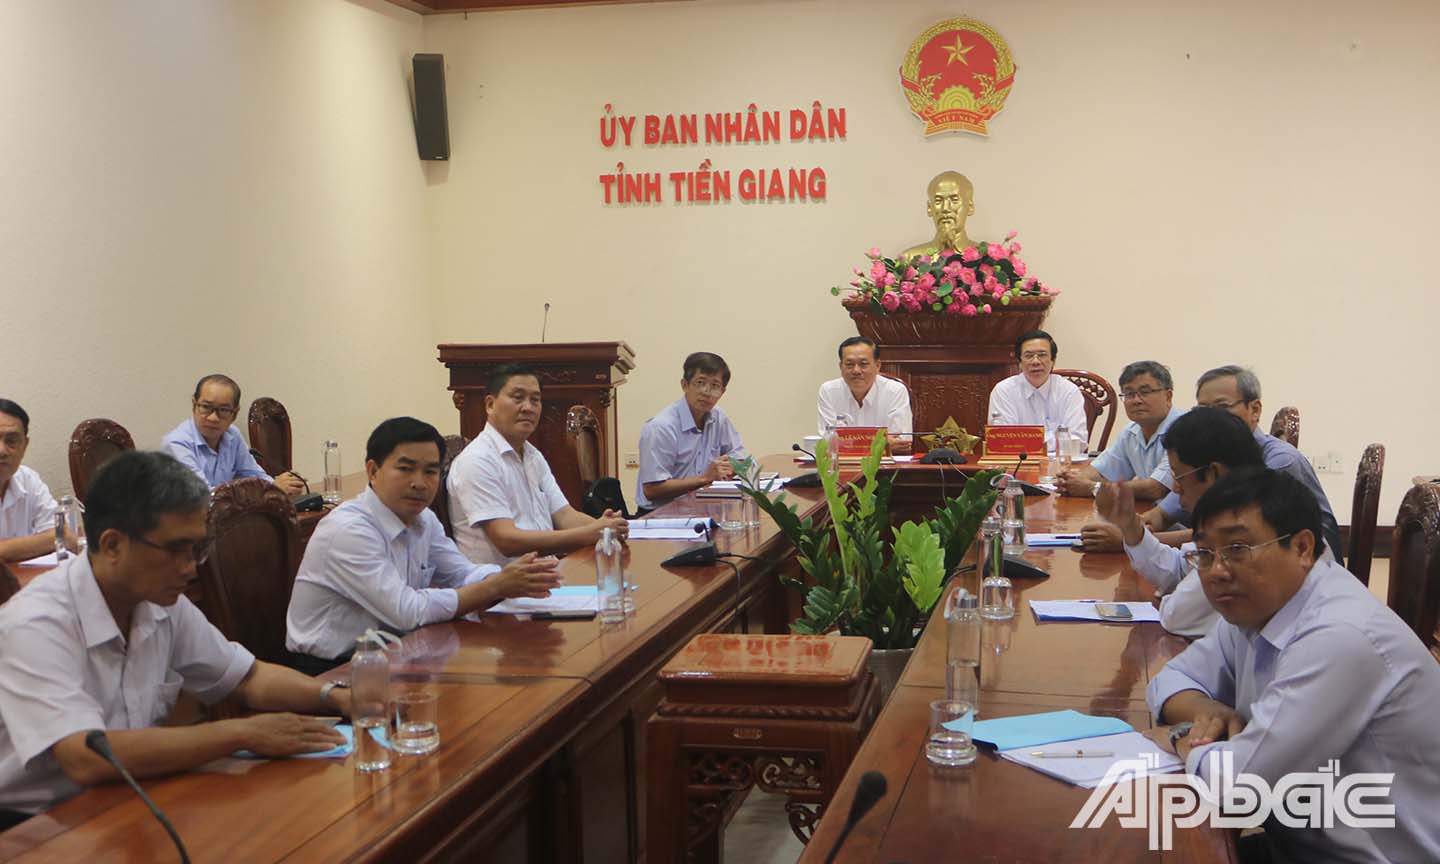 Các đại biểu tham dự hội nghị ở điểm cầu Tiên Giang.